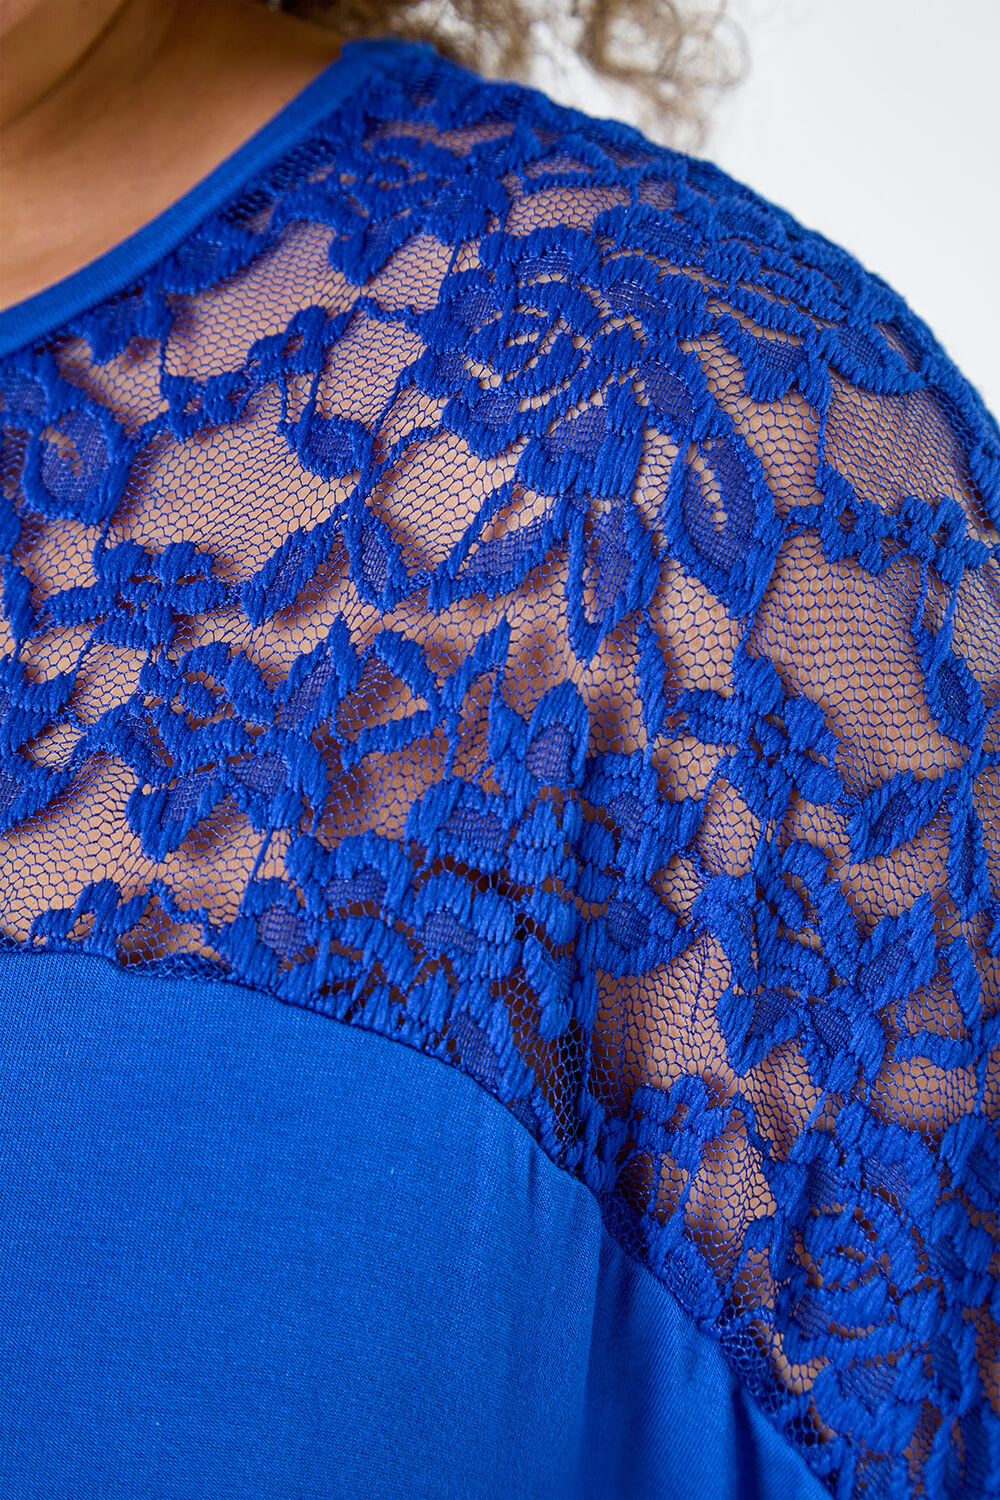 Royal Blue Curve Lace Yoke Stretch Jersey Top, Image 5 of 5